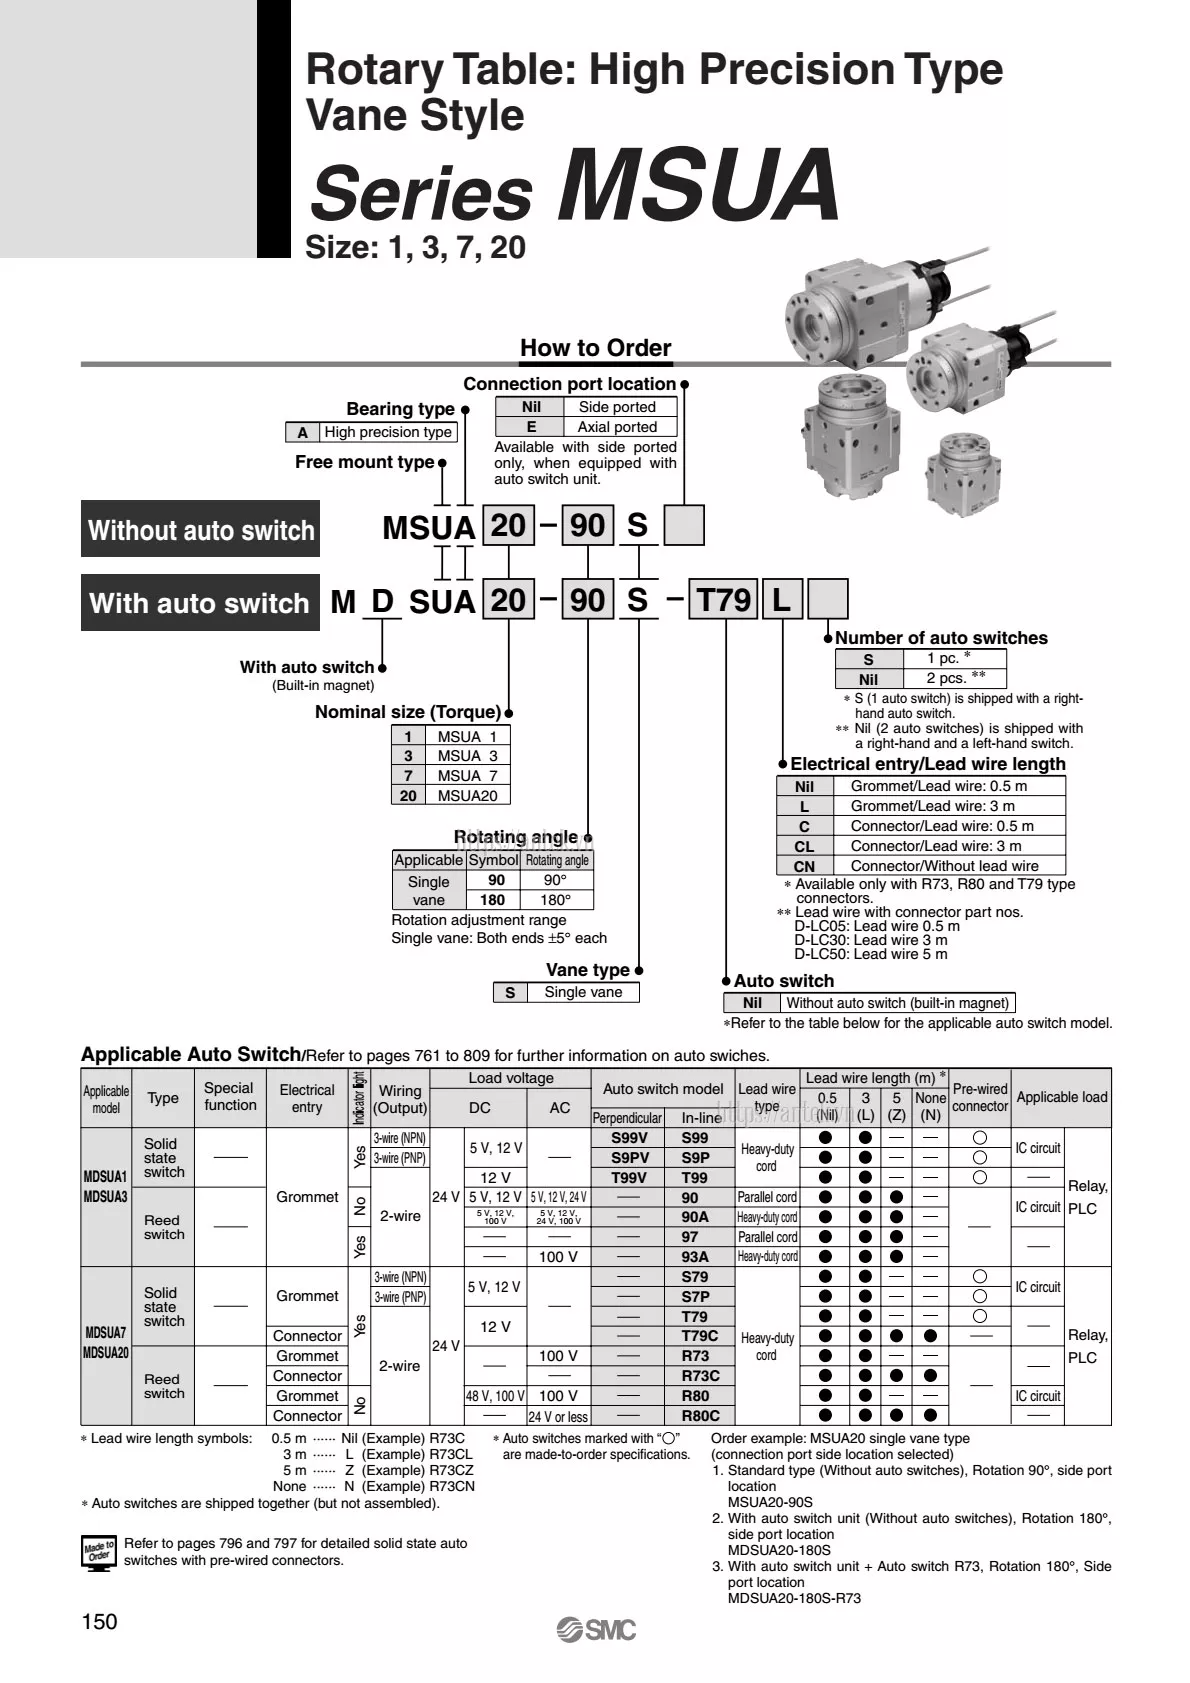 Thông số đặt hàng Xi lanh CDRBU2W20-270S